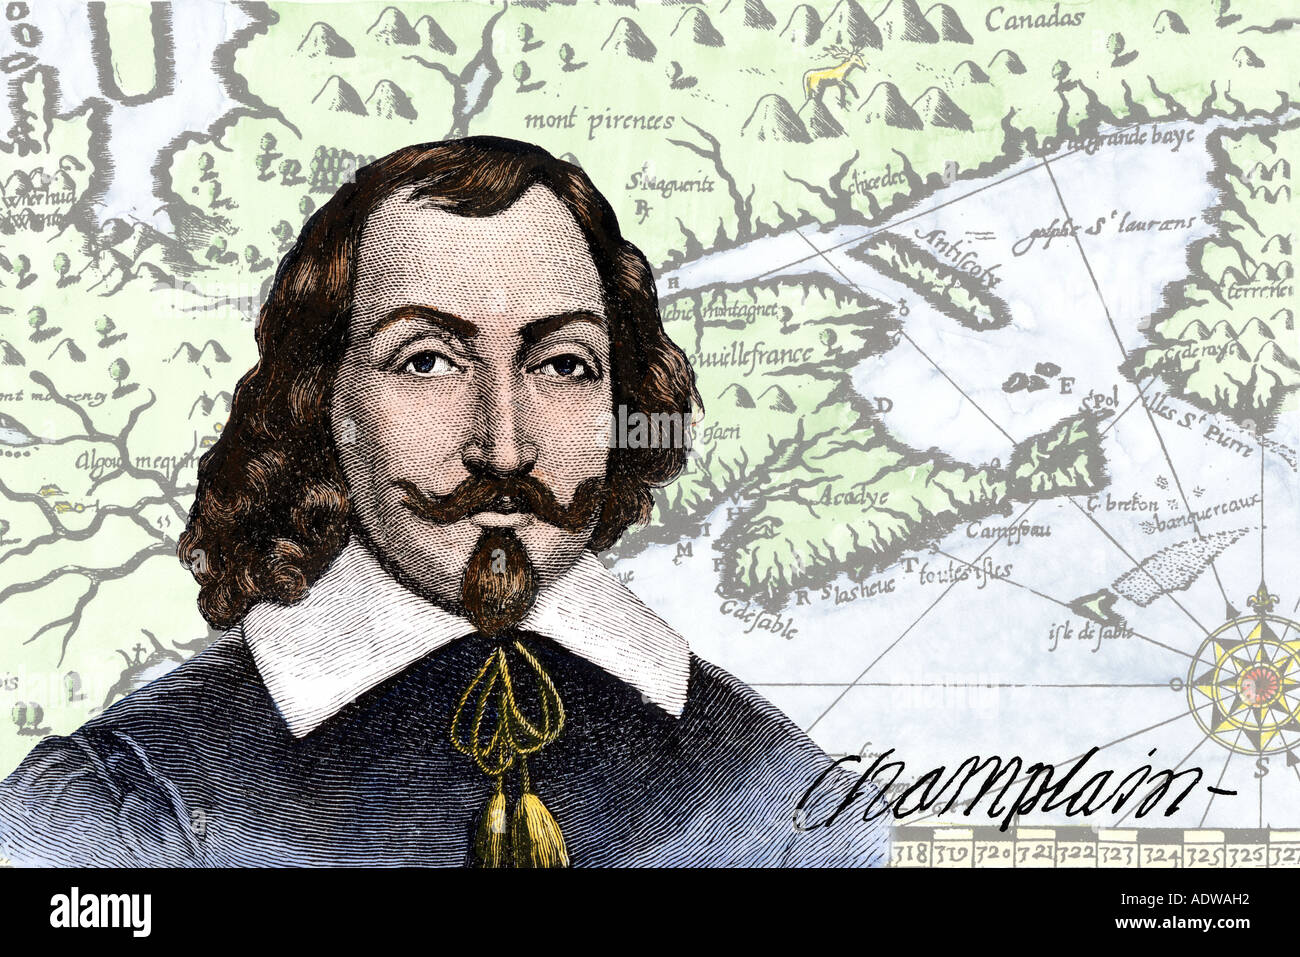 Französische explorer Samuel de Champlain und seine Karte der Golf von St. Lawrence in den frühen 1600er Jahren. Handkolorierte Holzschnitte digital kombiniert Stockfoto